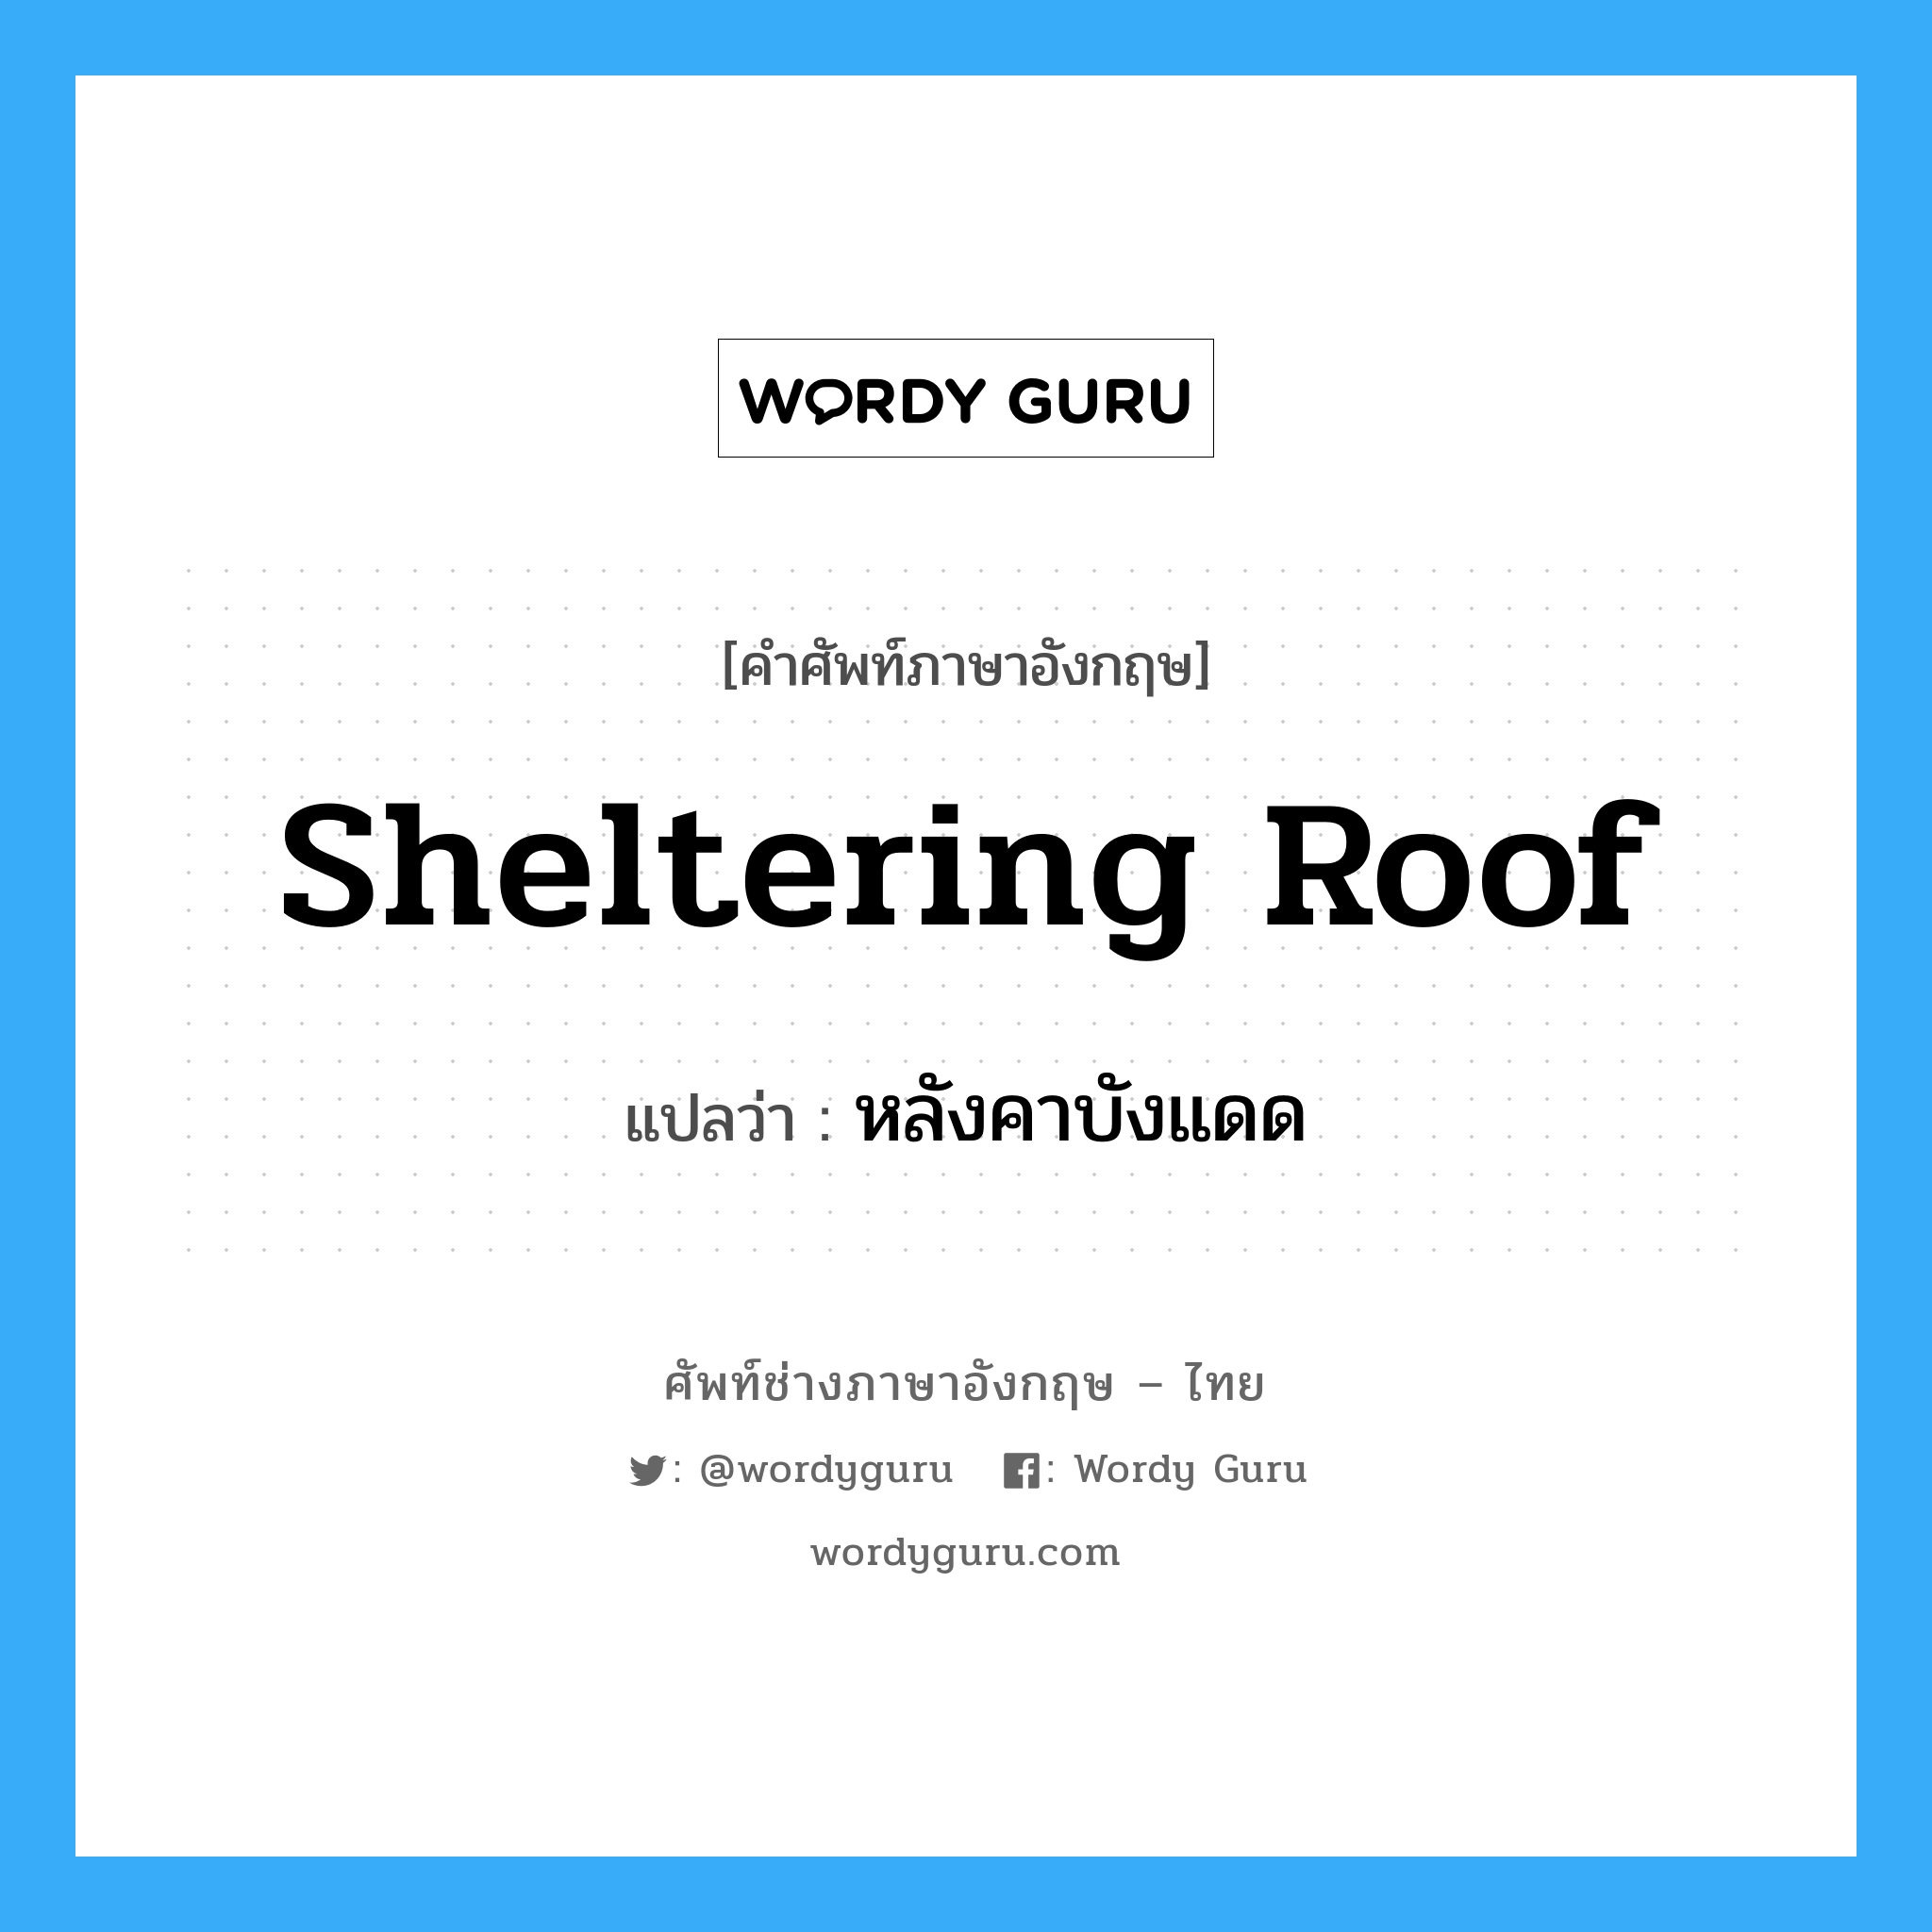 sheltering roof แปลว่า?, คำศัพท์ช่างภาษาอังกฤษ - ไทย sheltering roof คำศัพท์ภาษาอังกฤษ sheltering roof แปลว่า หลังคาบังแดด